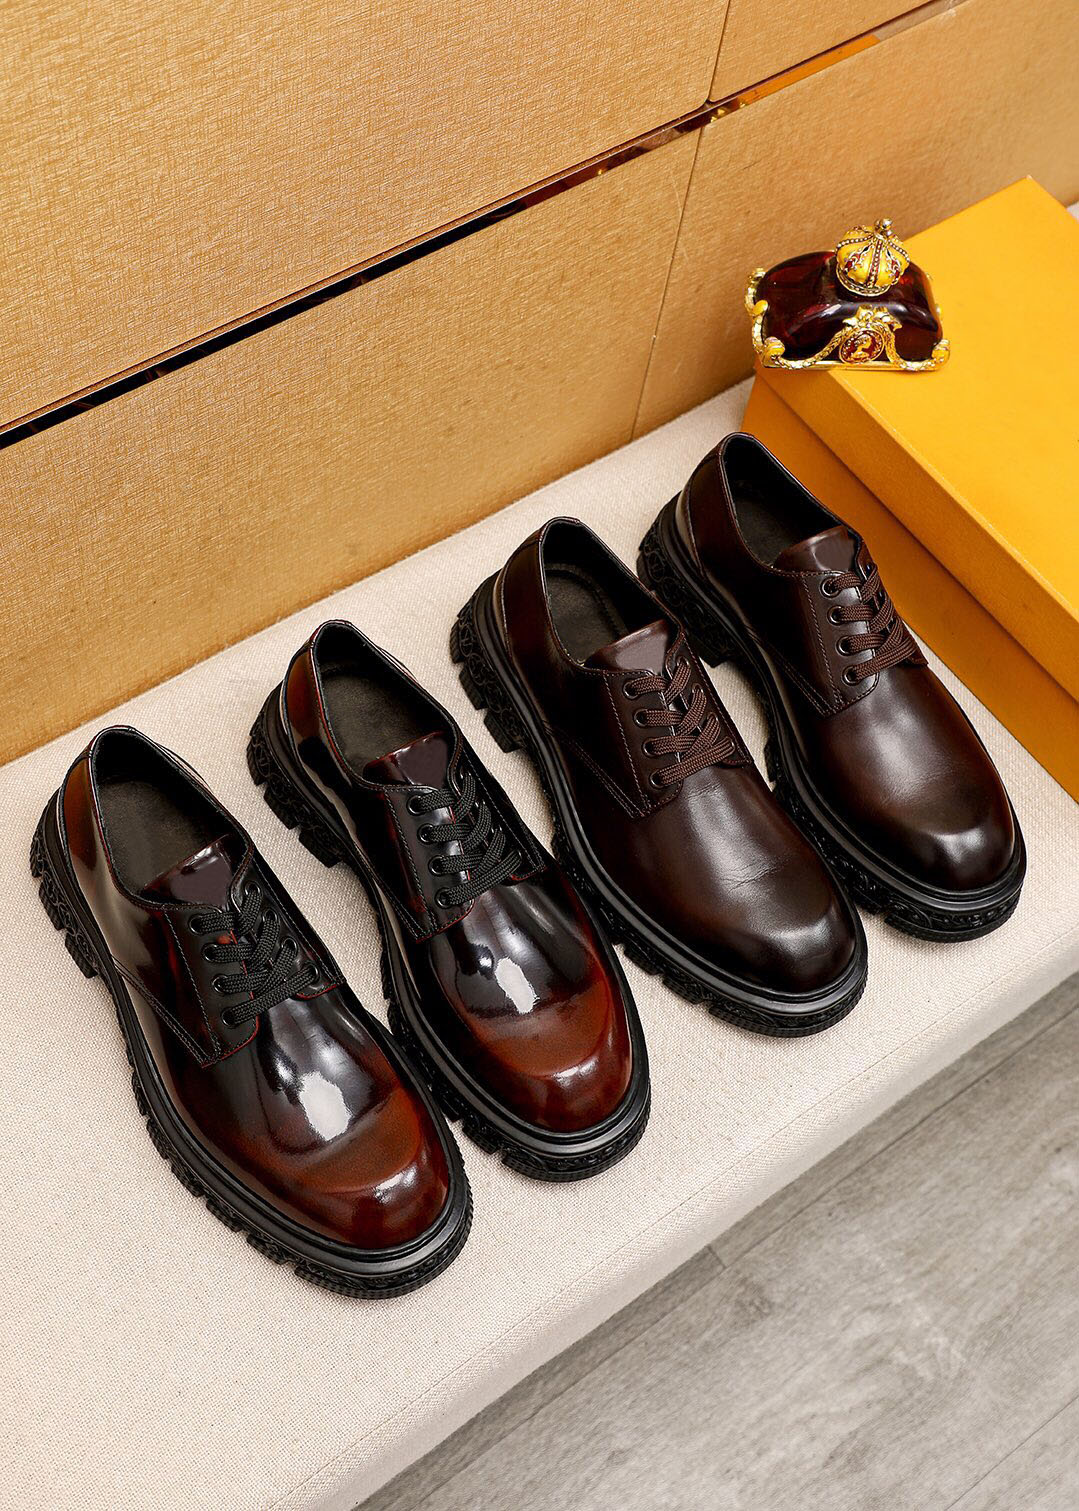 2023 männer Designer Kleid Schuhe Hohe Qualität Echtes Leder Plattform Oxfords Männlich Marke Formale Business Casual Schuhe Größe 38-45